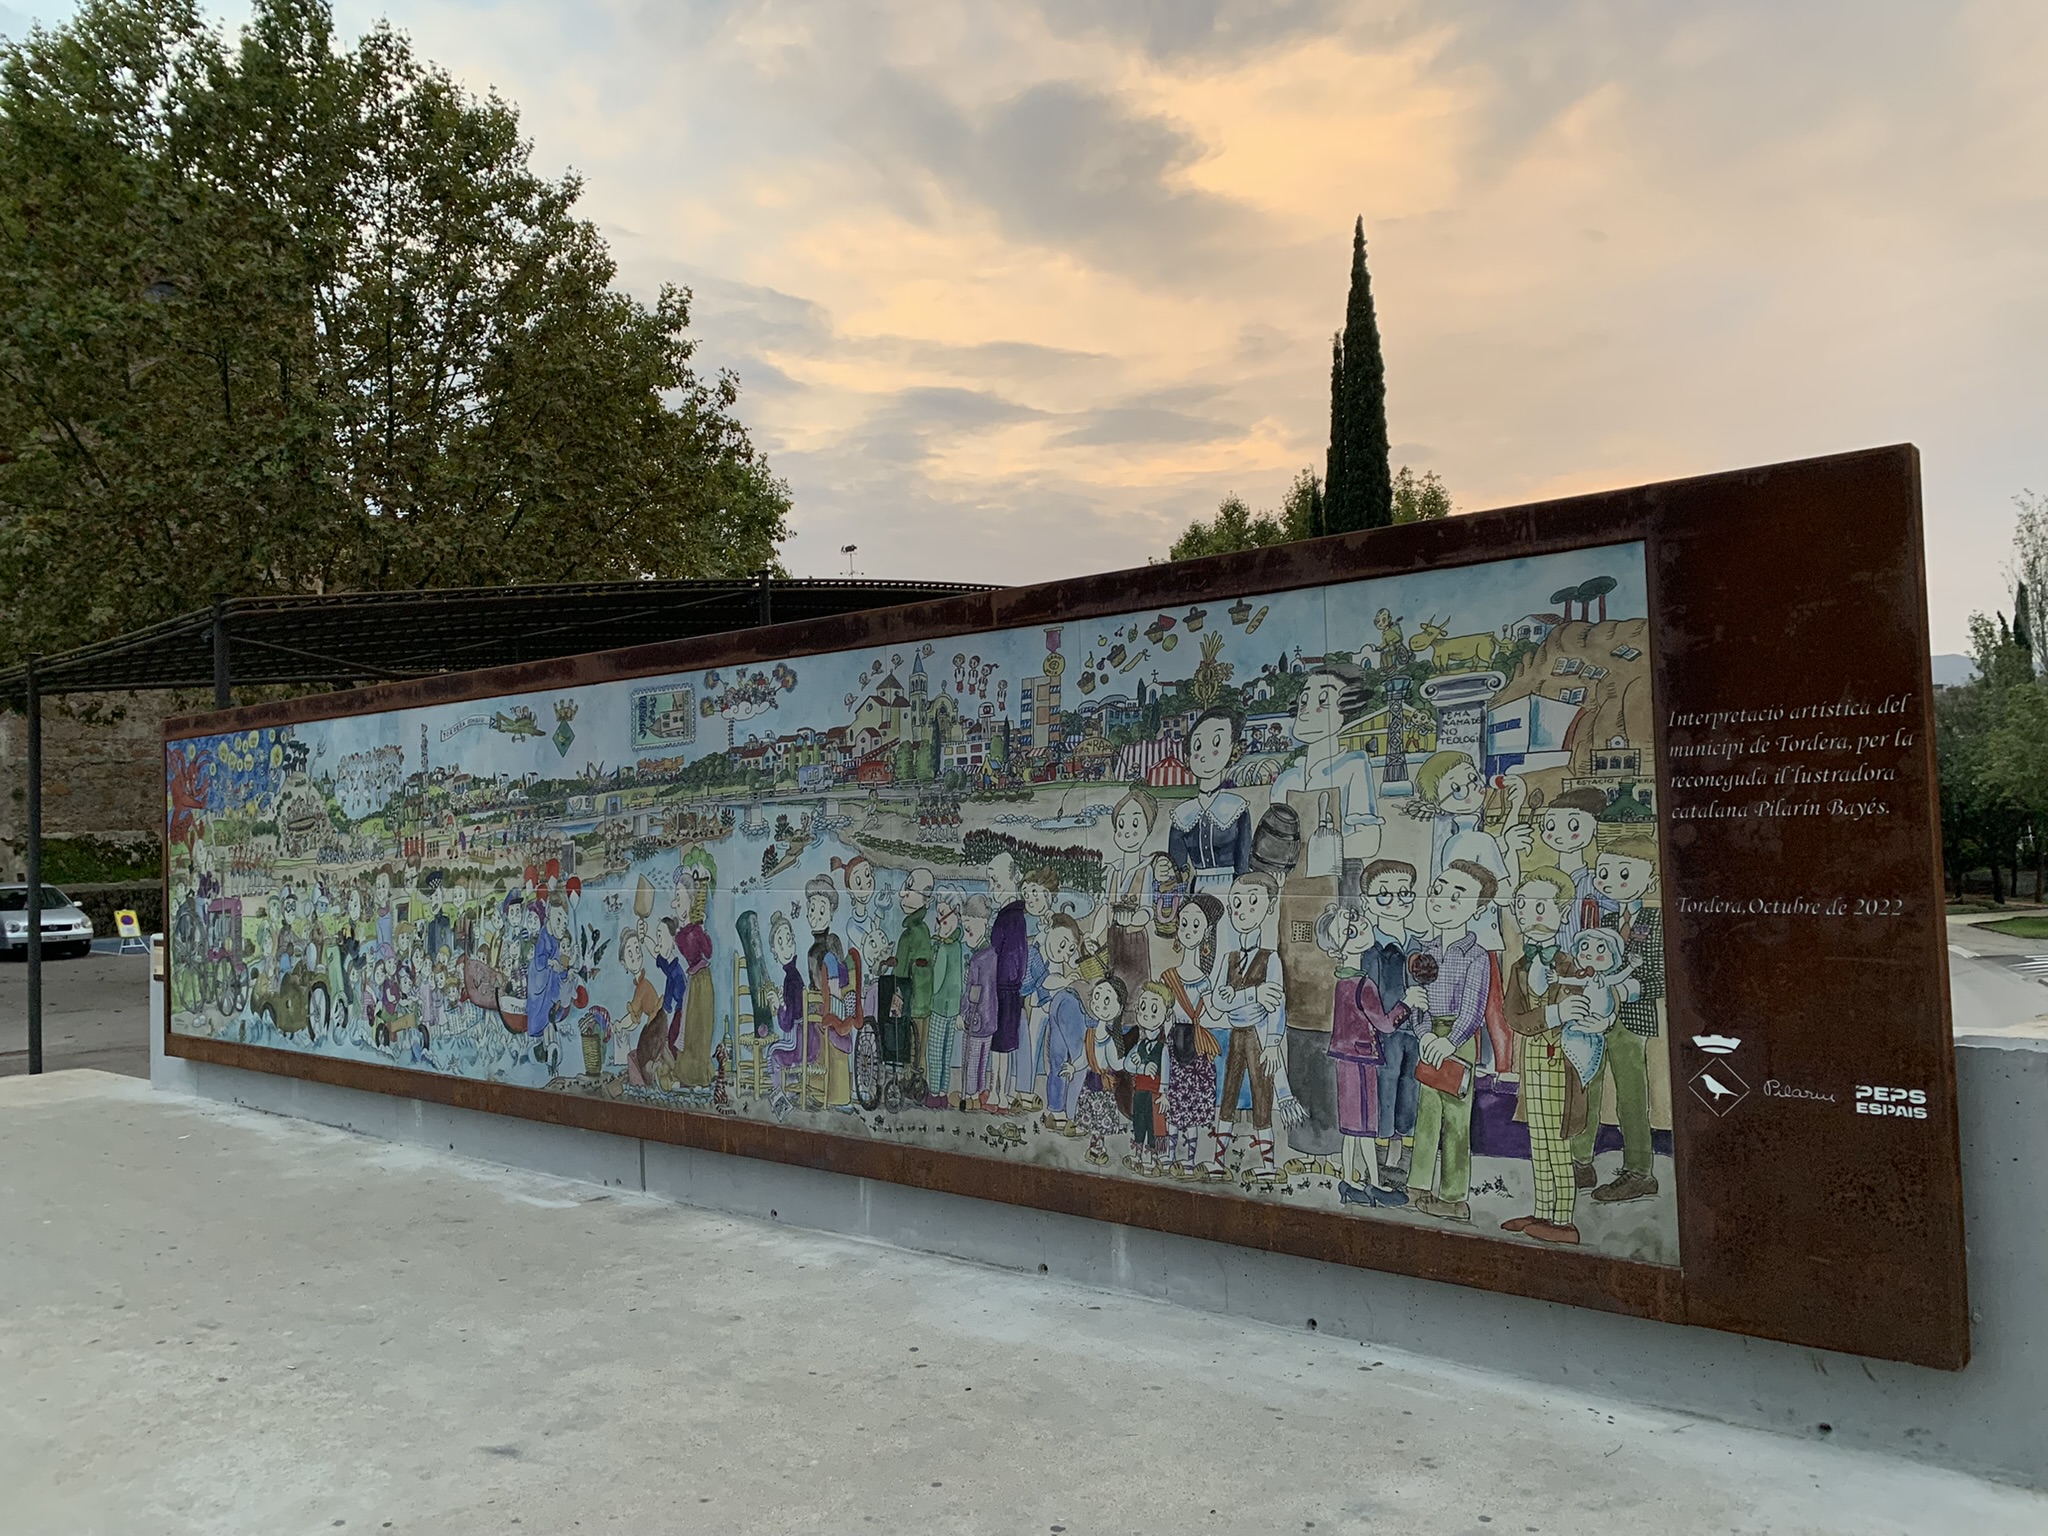 La ninotaire Pilarín Bayés, acompanyada per l'Alcalde, presenten el nou mural sobre Tordera